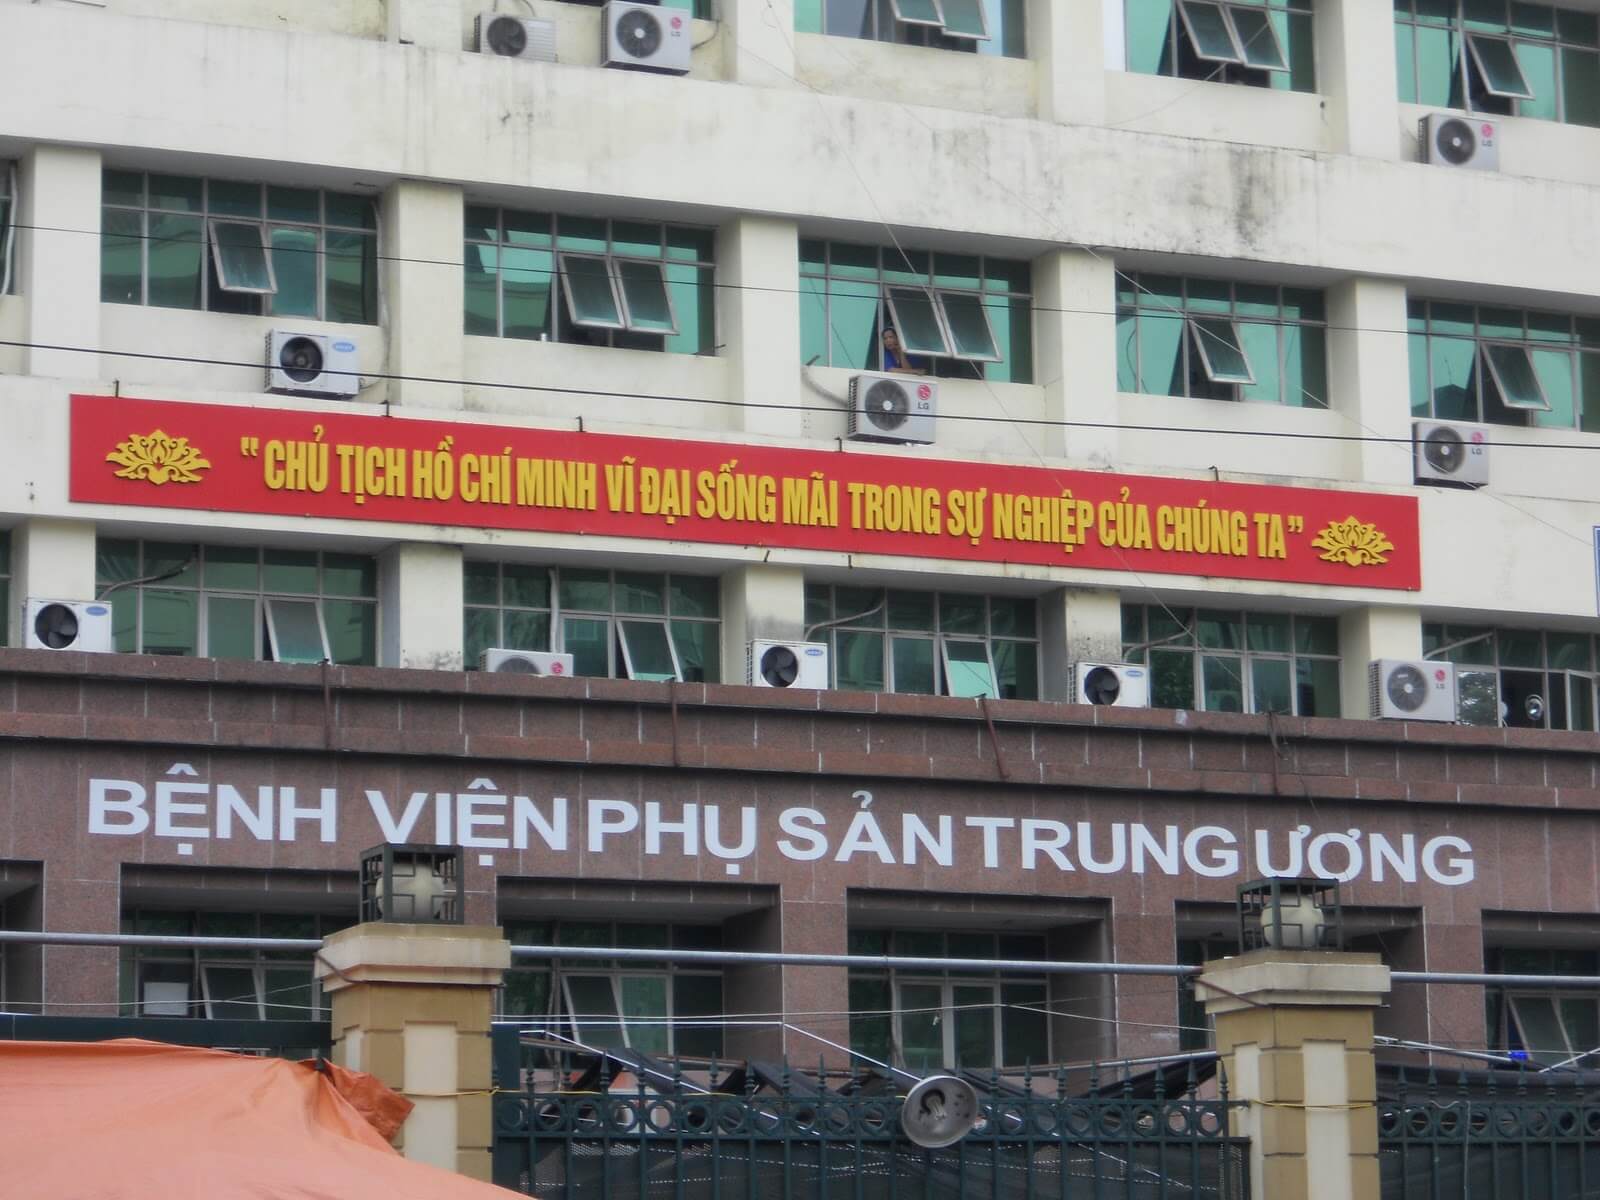  Bệnh viện phụ sản Trung ương Hà Nội